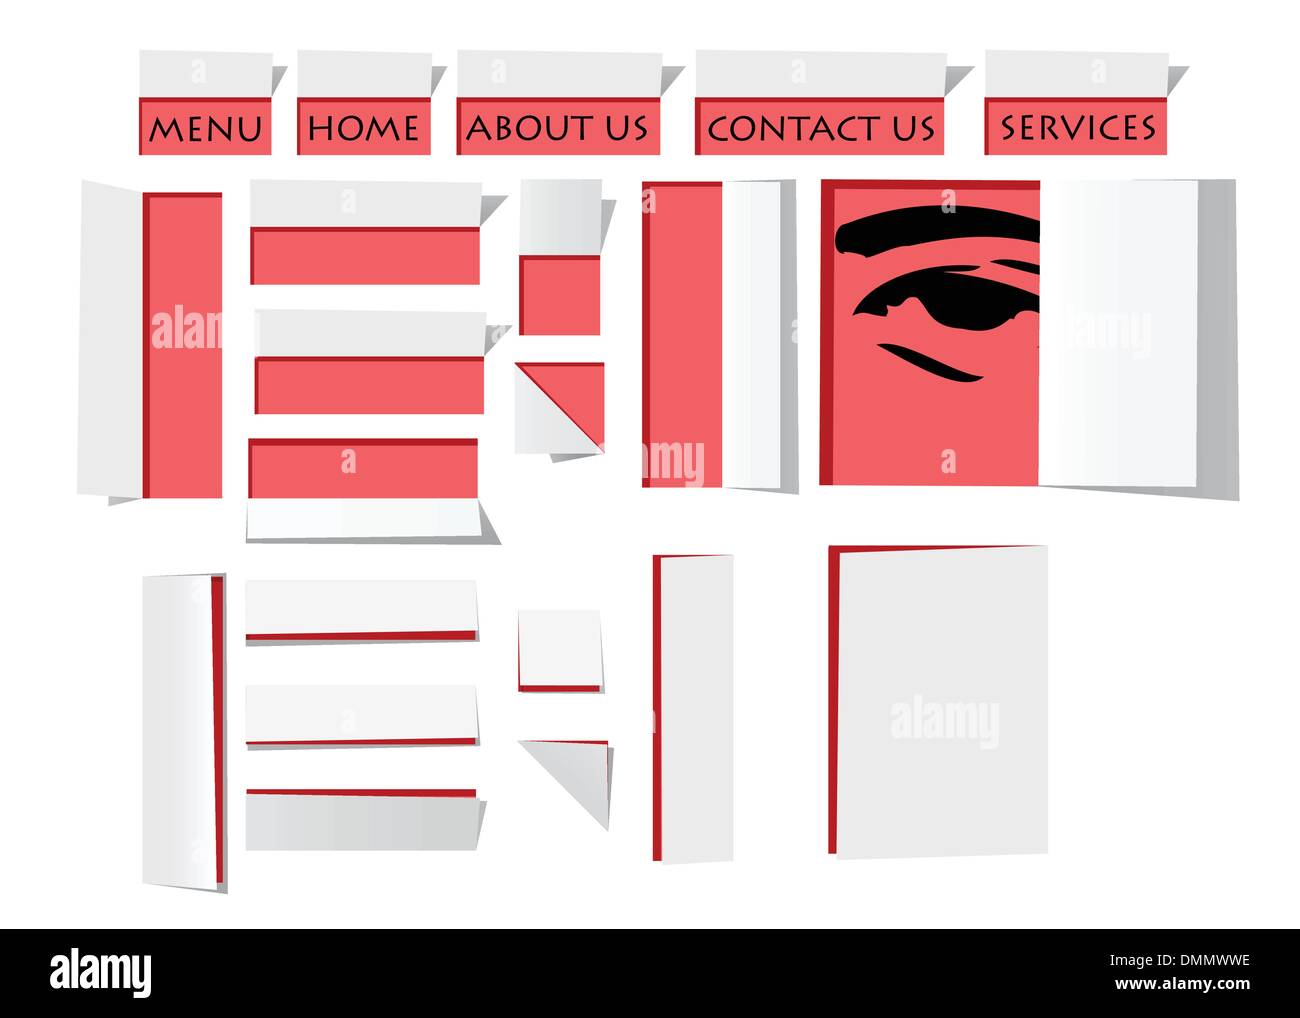 Website-Vorlage-Design in Origami-Papier-Stil Stock Vektor